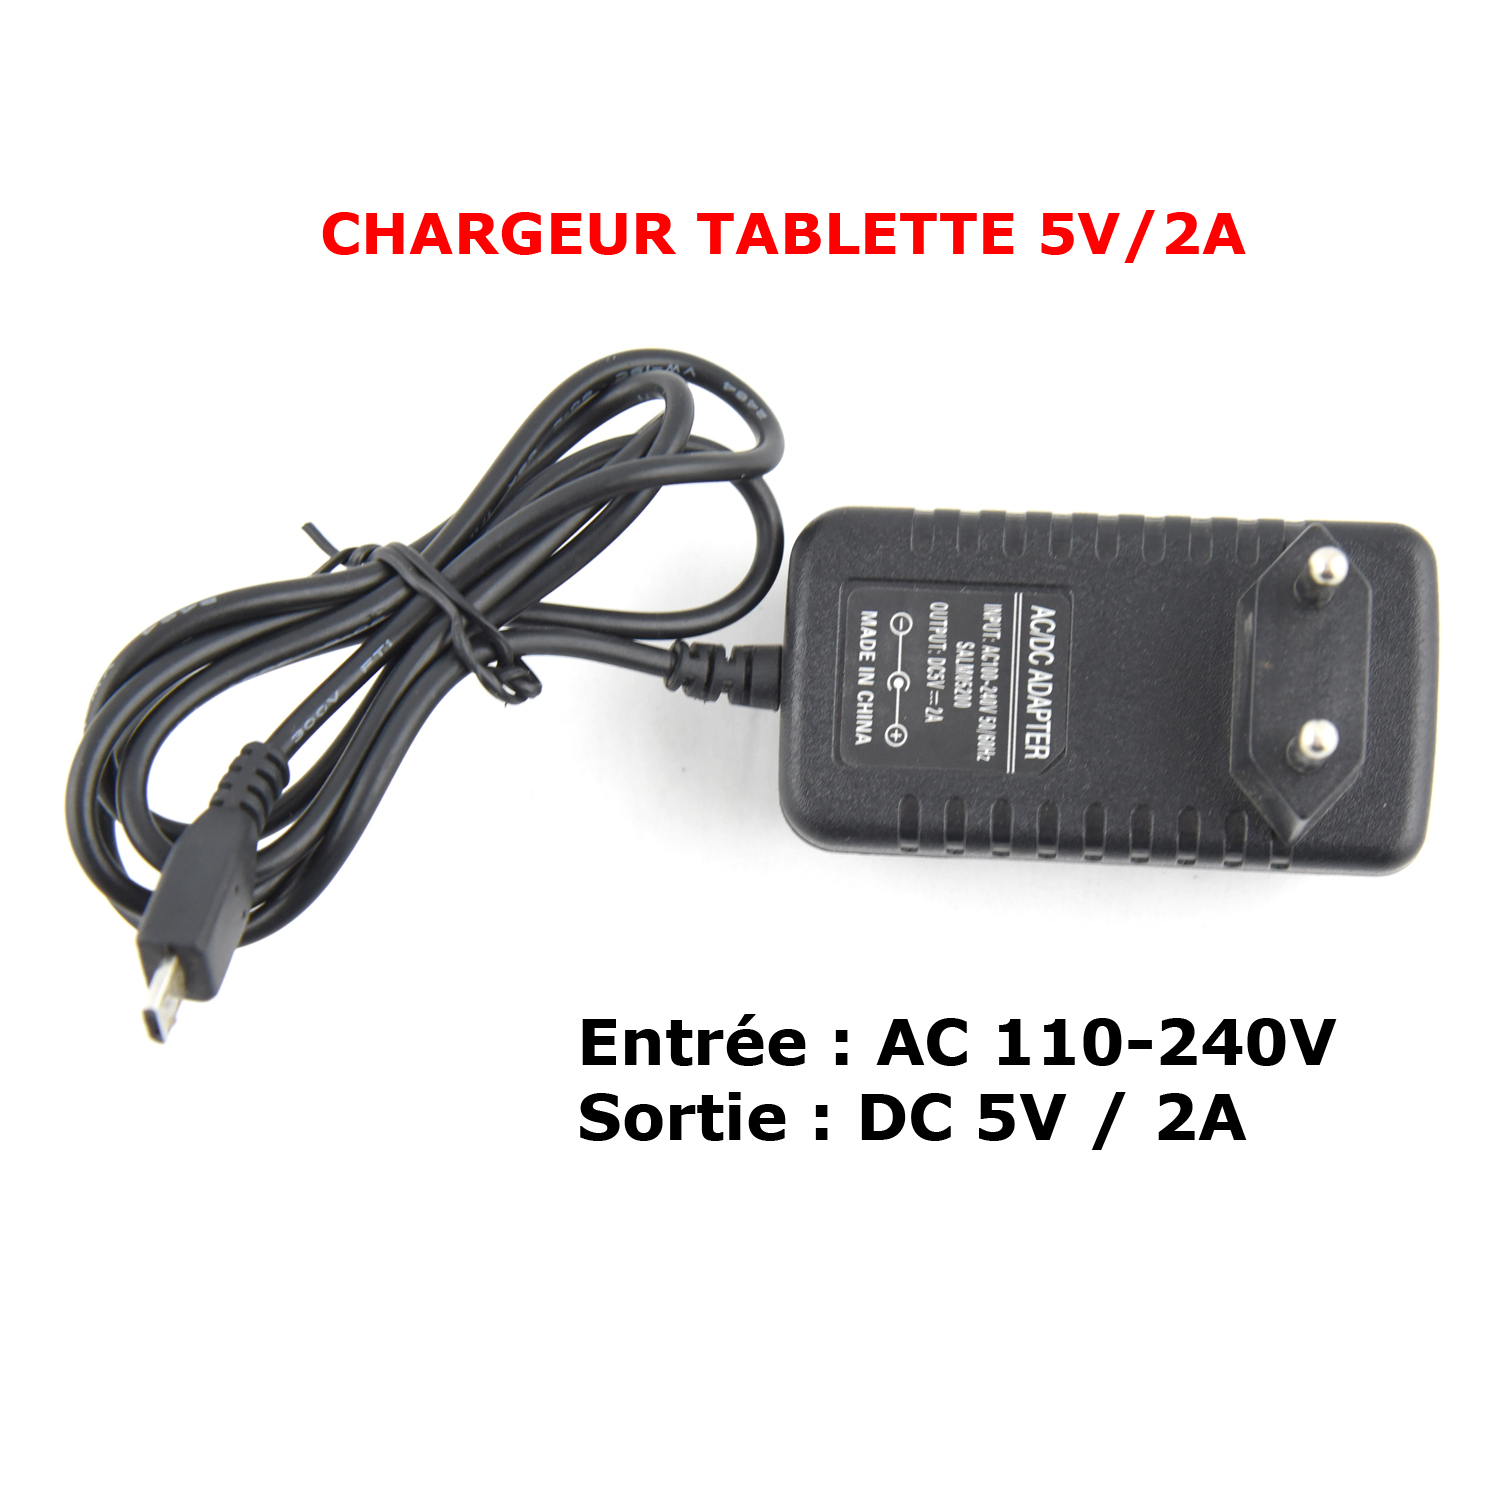 Vente CHARGEUR TABLETTE 5V/2A a bas prix | Electro Tounes